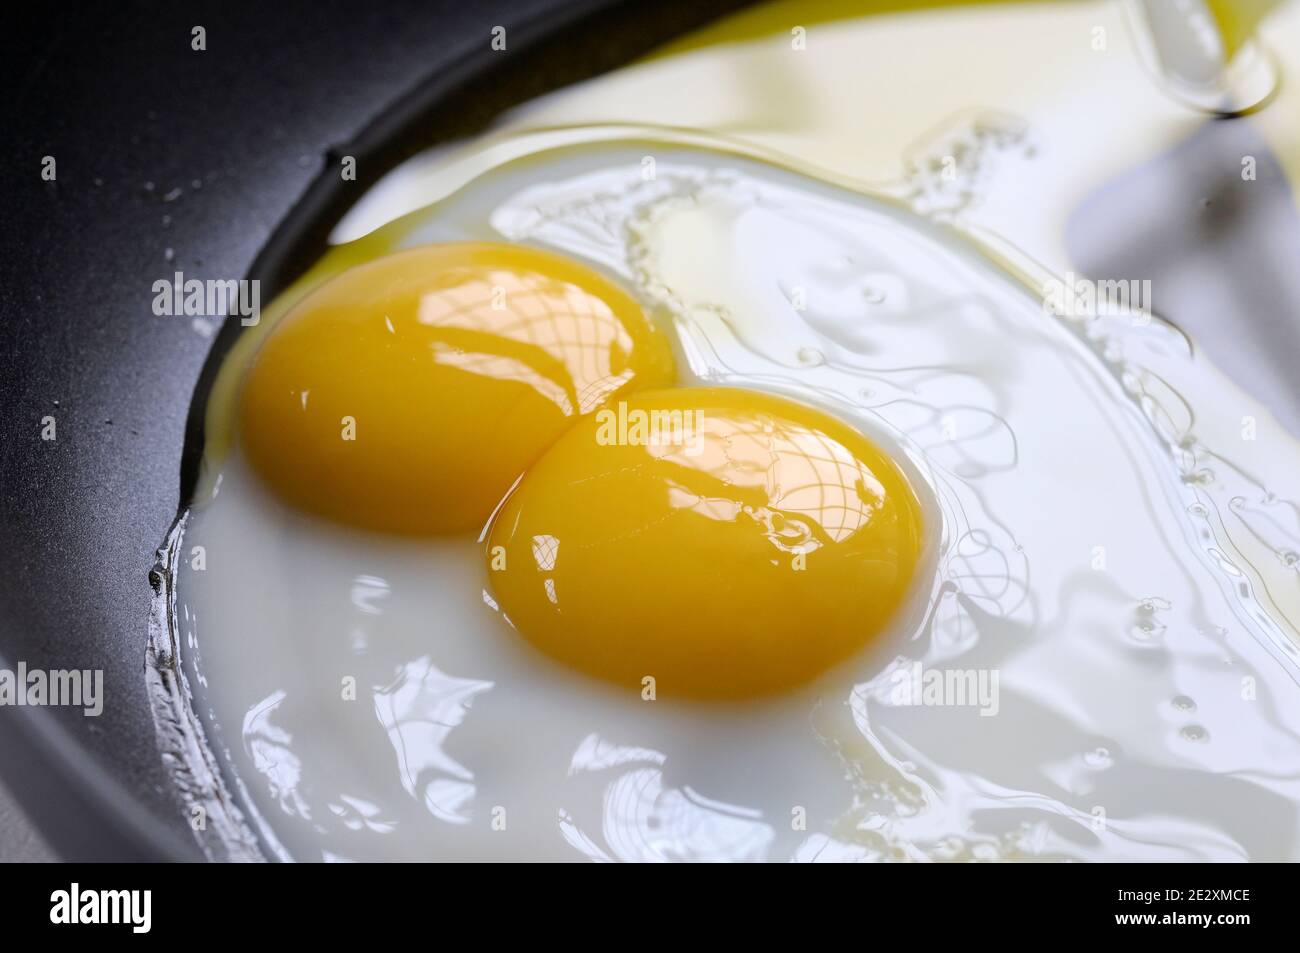 Cocción de huevos fritos de yema doble en aceite en una sartén. Las yemas gemelas son bastante raras y ocurren aproximadamente uno de cada 1,000 huevos. Foto de stock